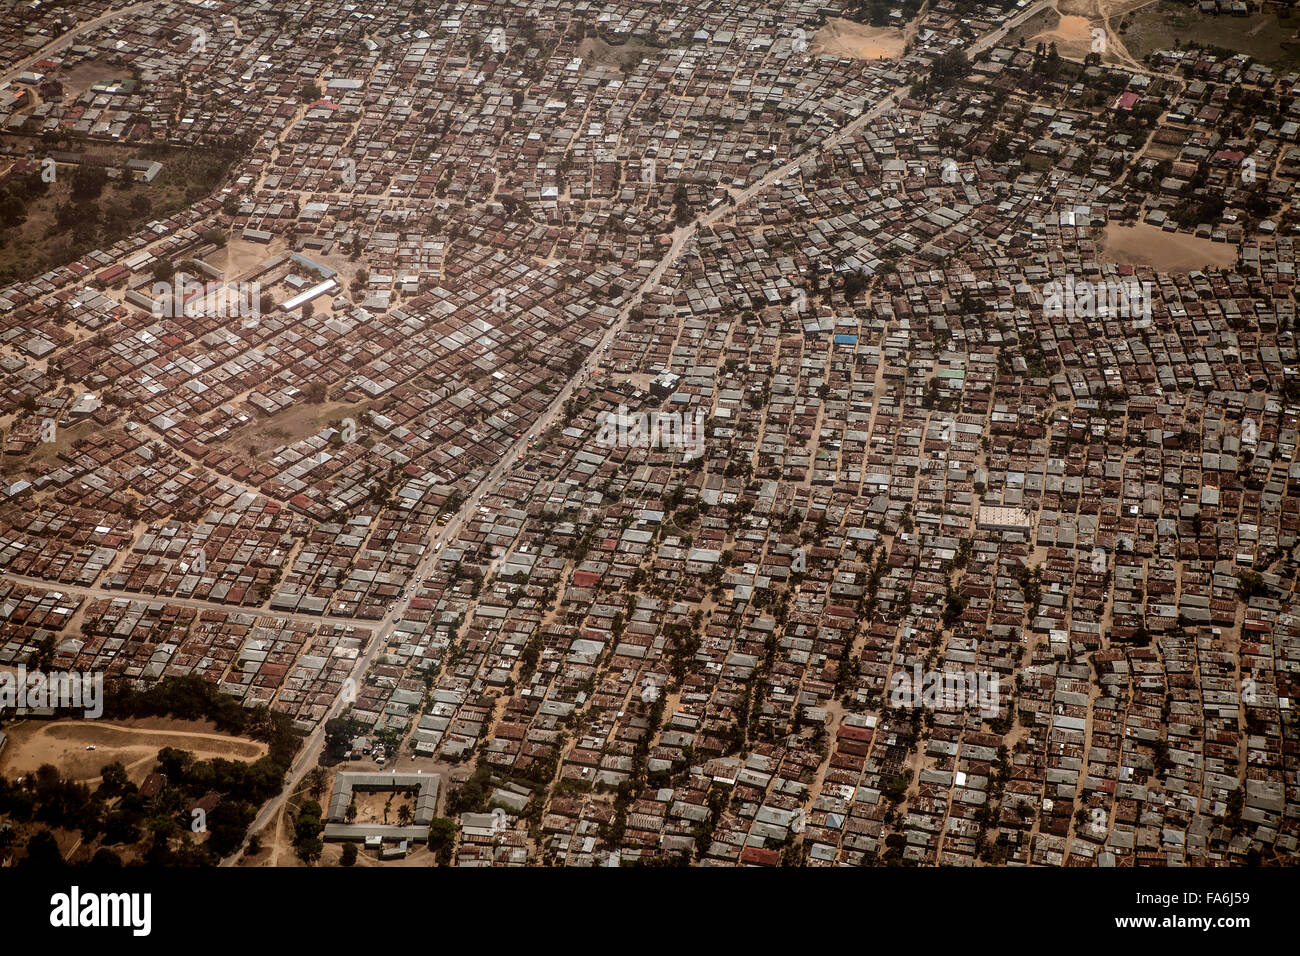 Aerial view of residential Stone Town, Zanzibar, Tanzania. Stock Photo